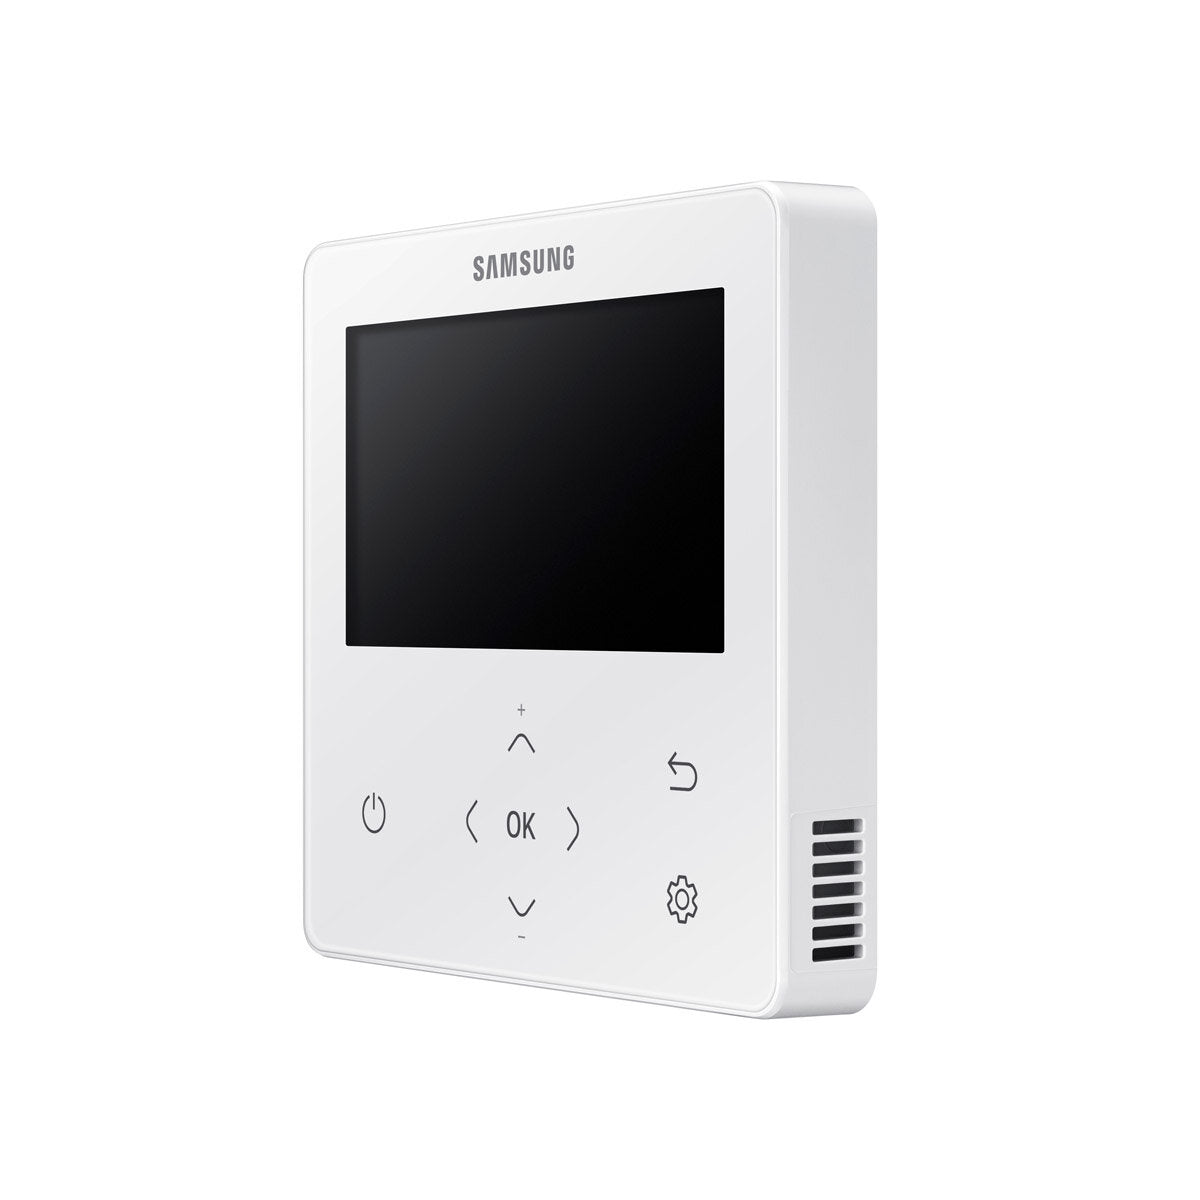 Samsung Air conditioner Windfree 4-way penta split 9000 + 9000 + 12000 + 12000 + 12000 BTU inverter A ++ outdoor unit 10.0 kW